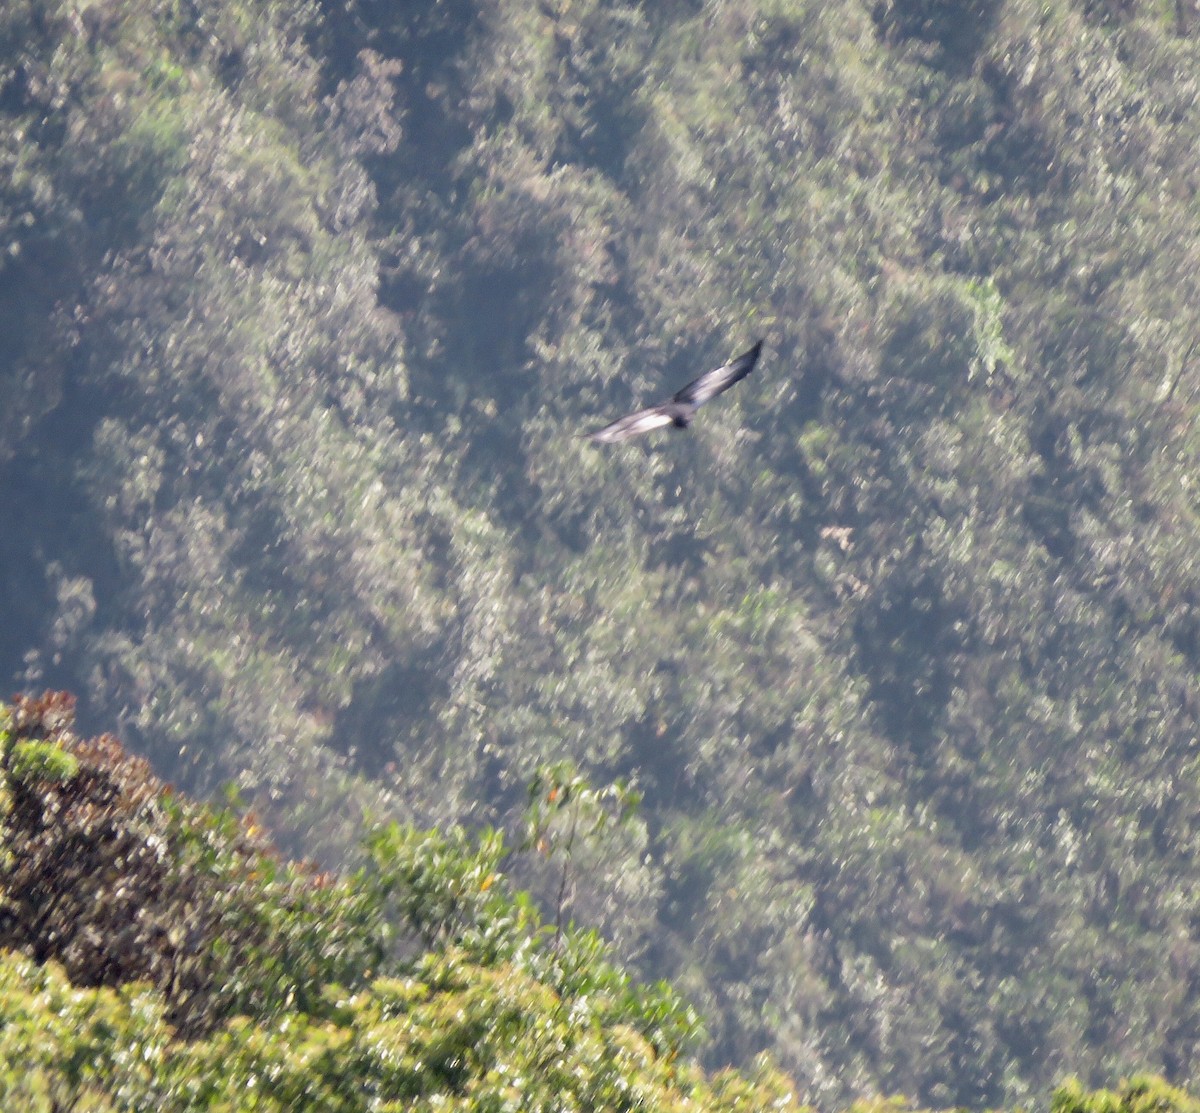 Andean Condor - Yve Morrell